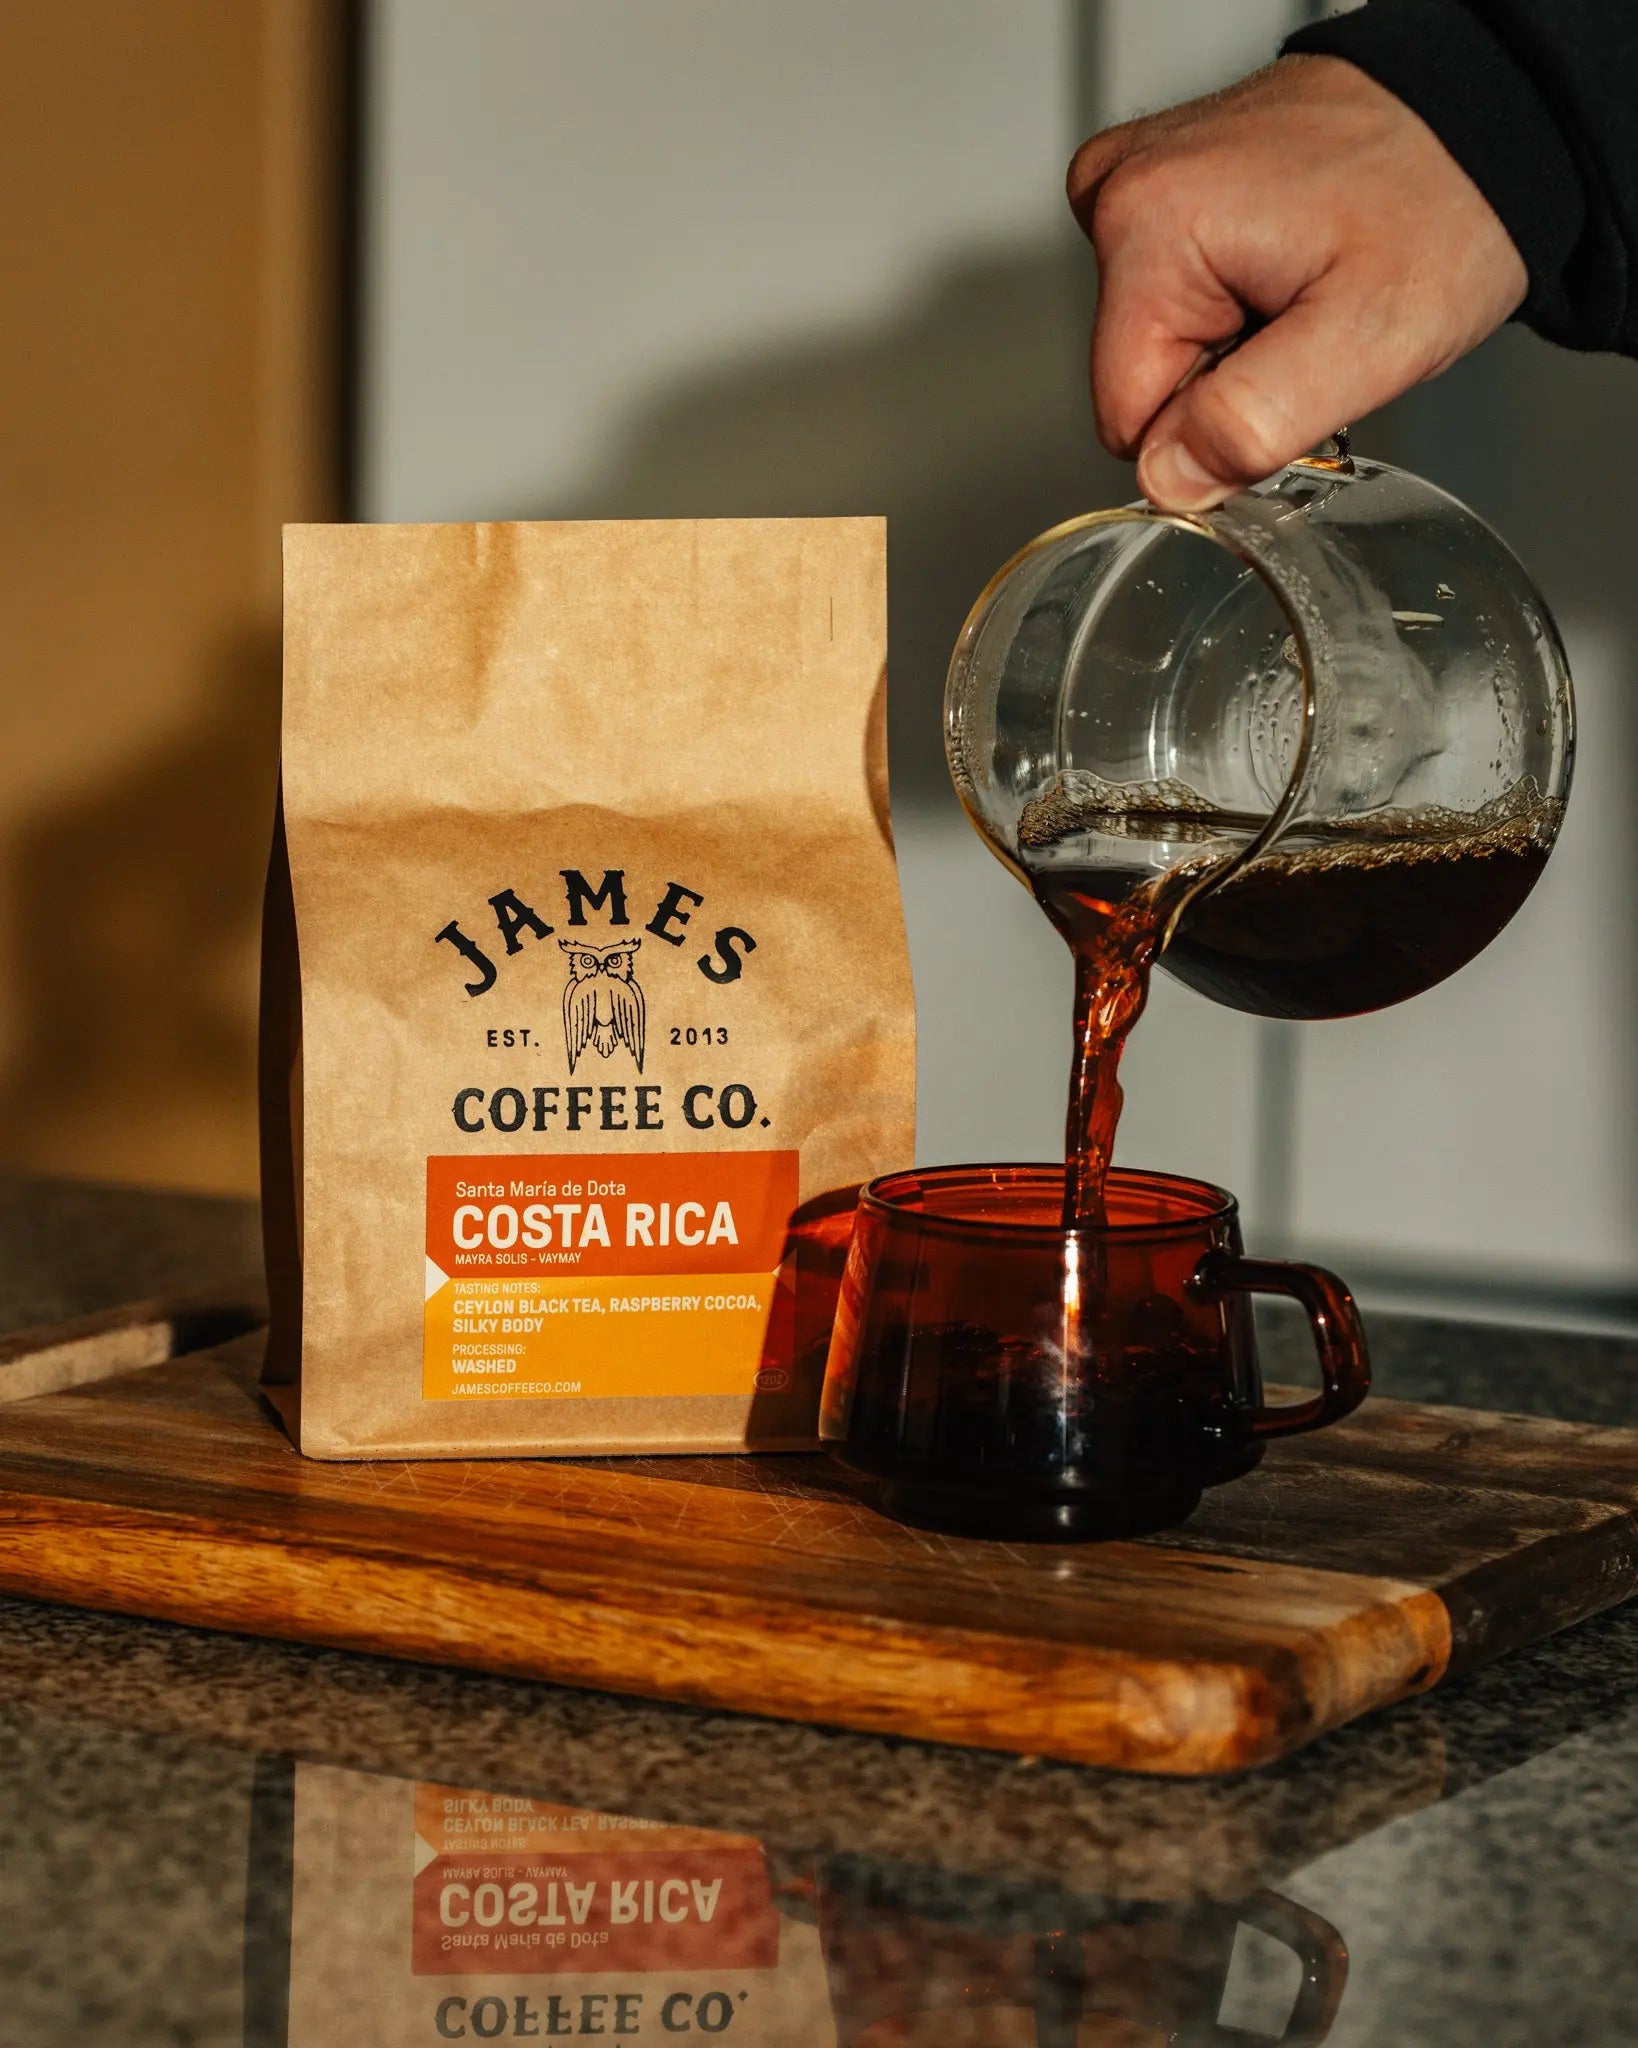 Costa Rica "Santa Maria de Dota" Direct Trade James Coffee Co.